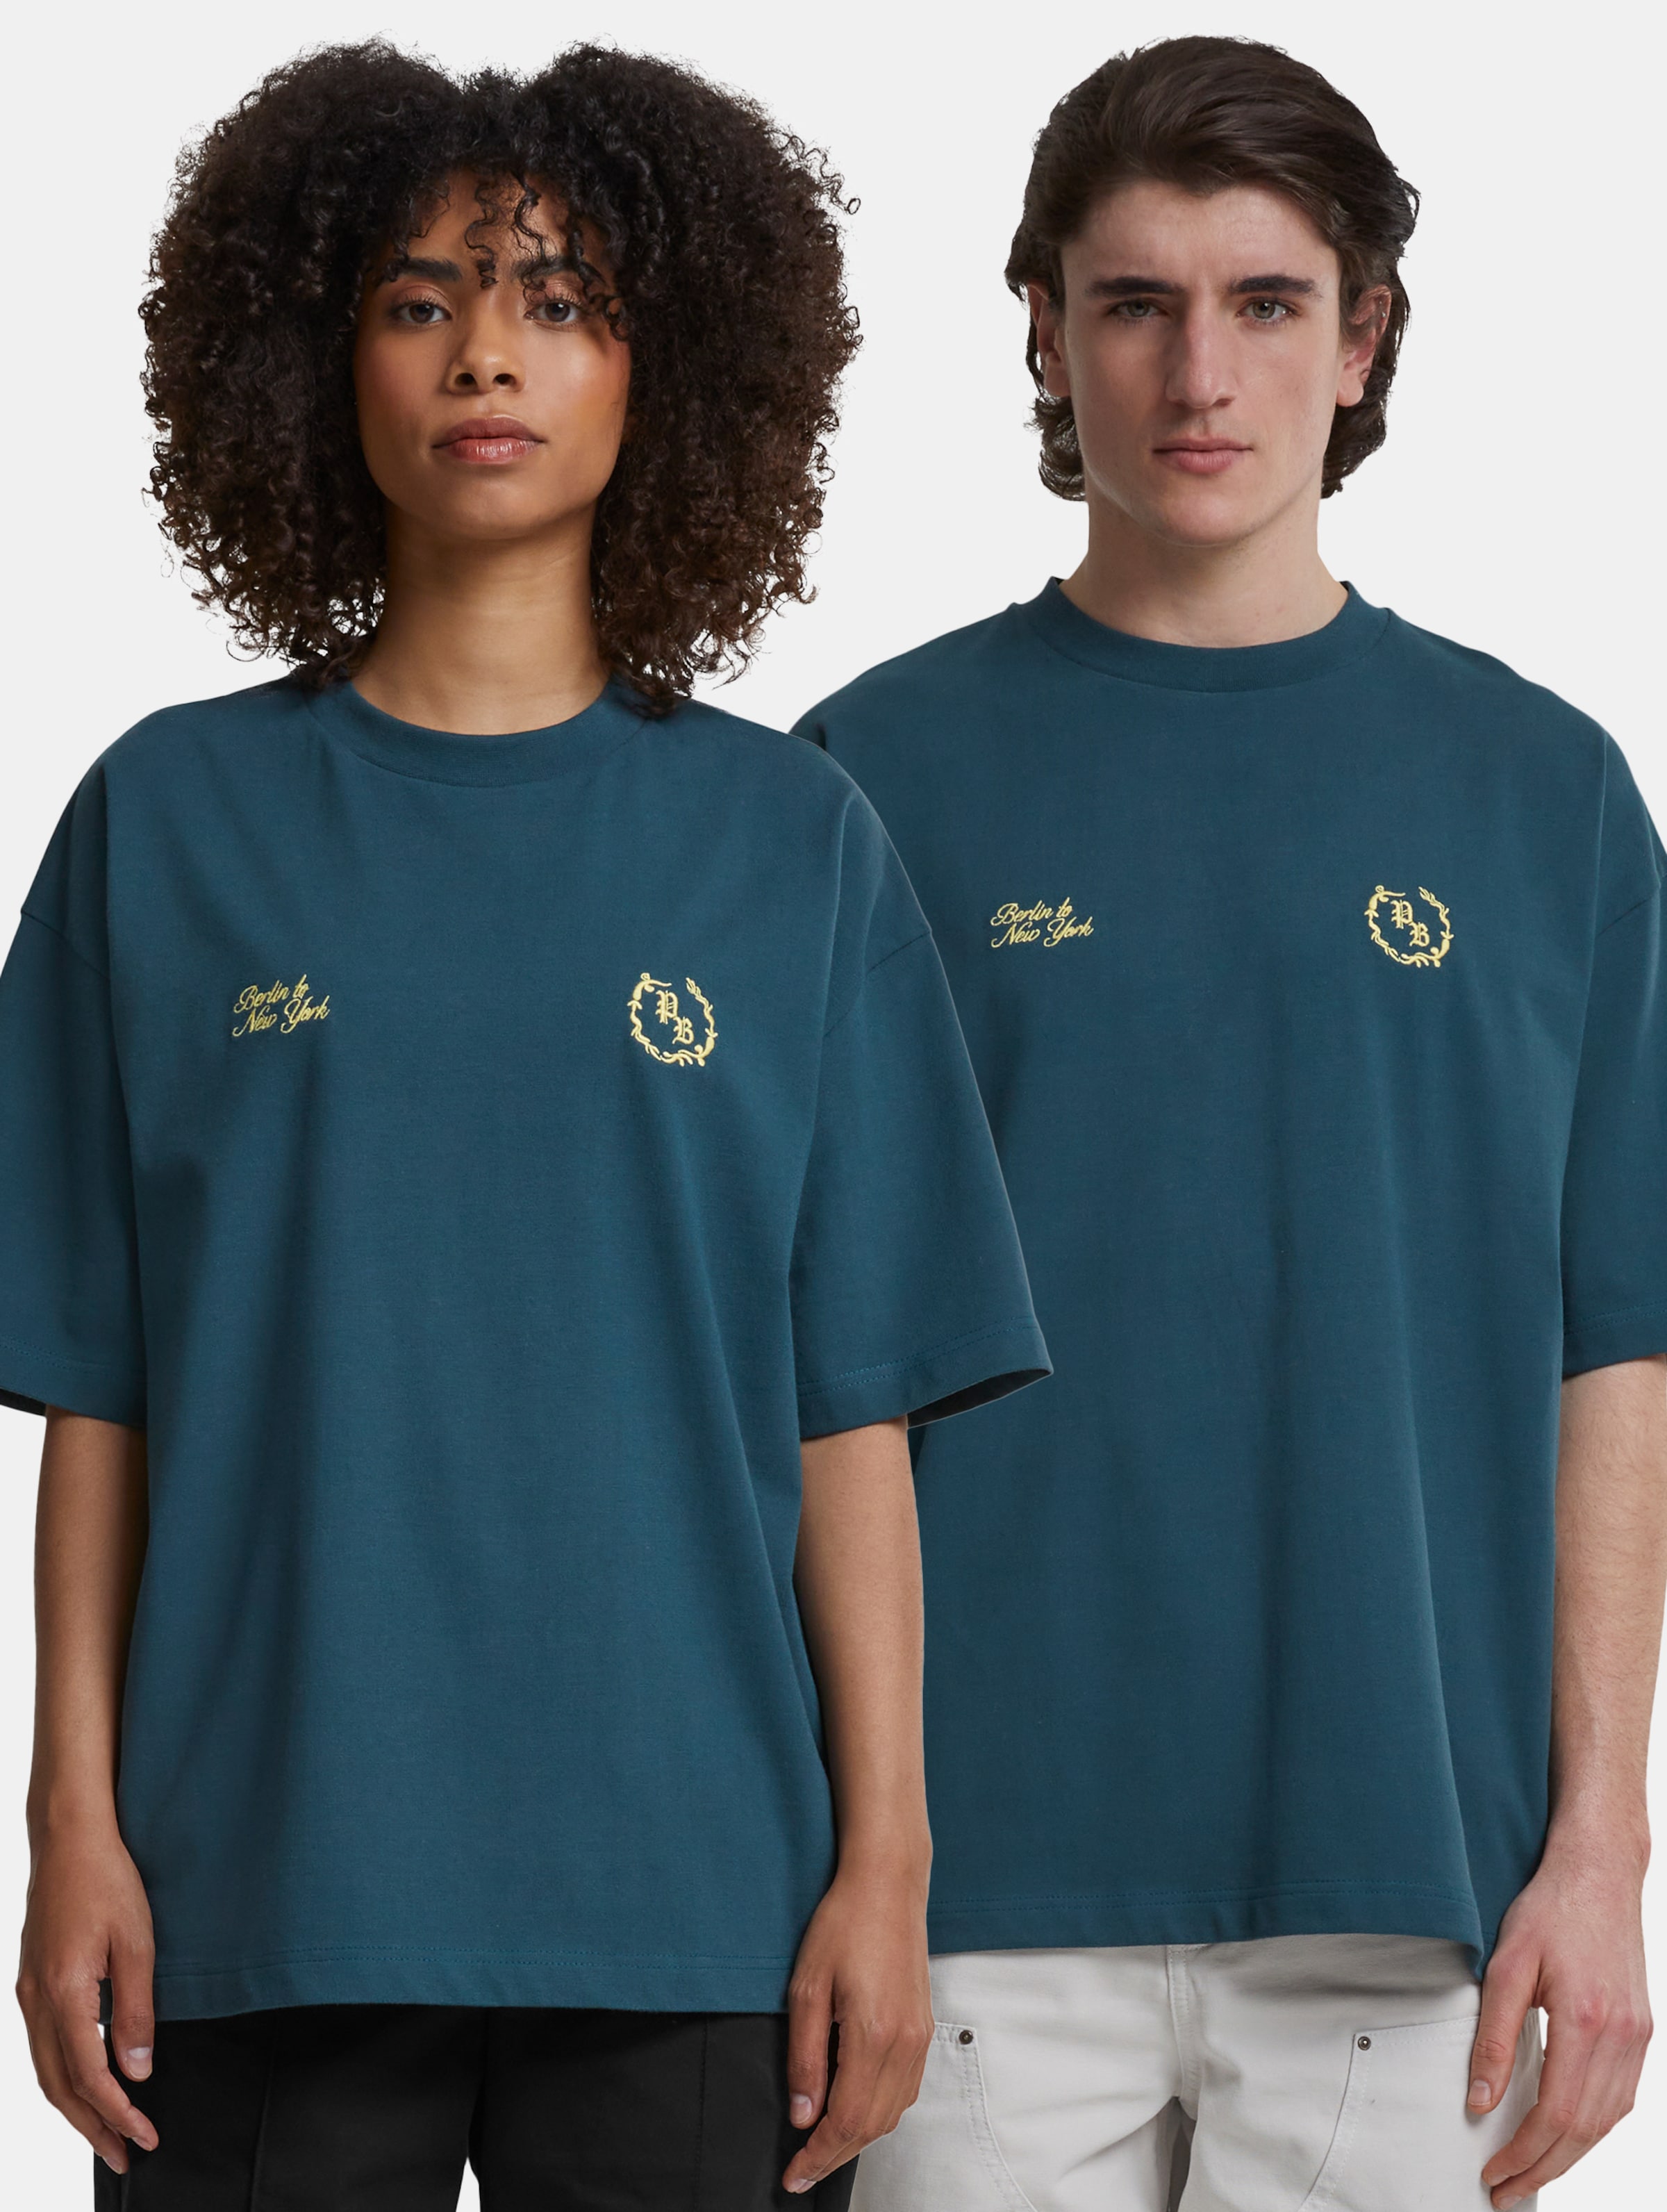 Prohibited Logo T Shirt Frauen,Männer,Unisex op kleur groen, Maat XXL